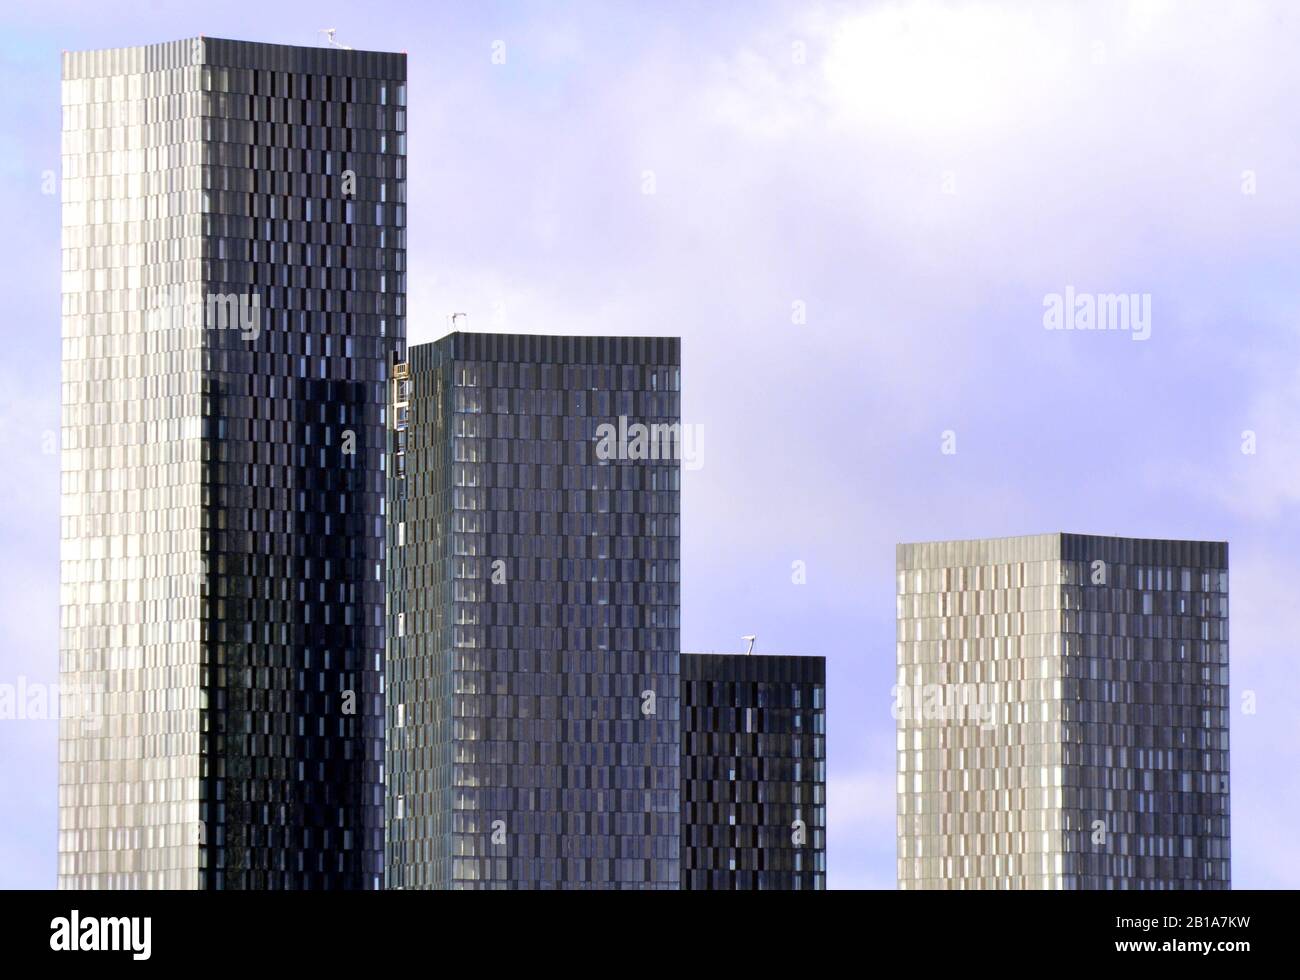 Hochhäuser am Deansgate Square, einer Wolkenkratzer-Entwicklung im Stadtzentrum von Manchester, Großbritannien, gegen einen wolkigen blauen Himmel Stockfoto